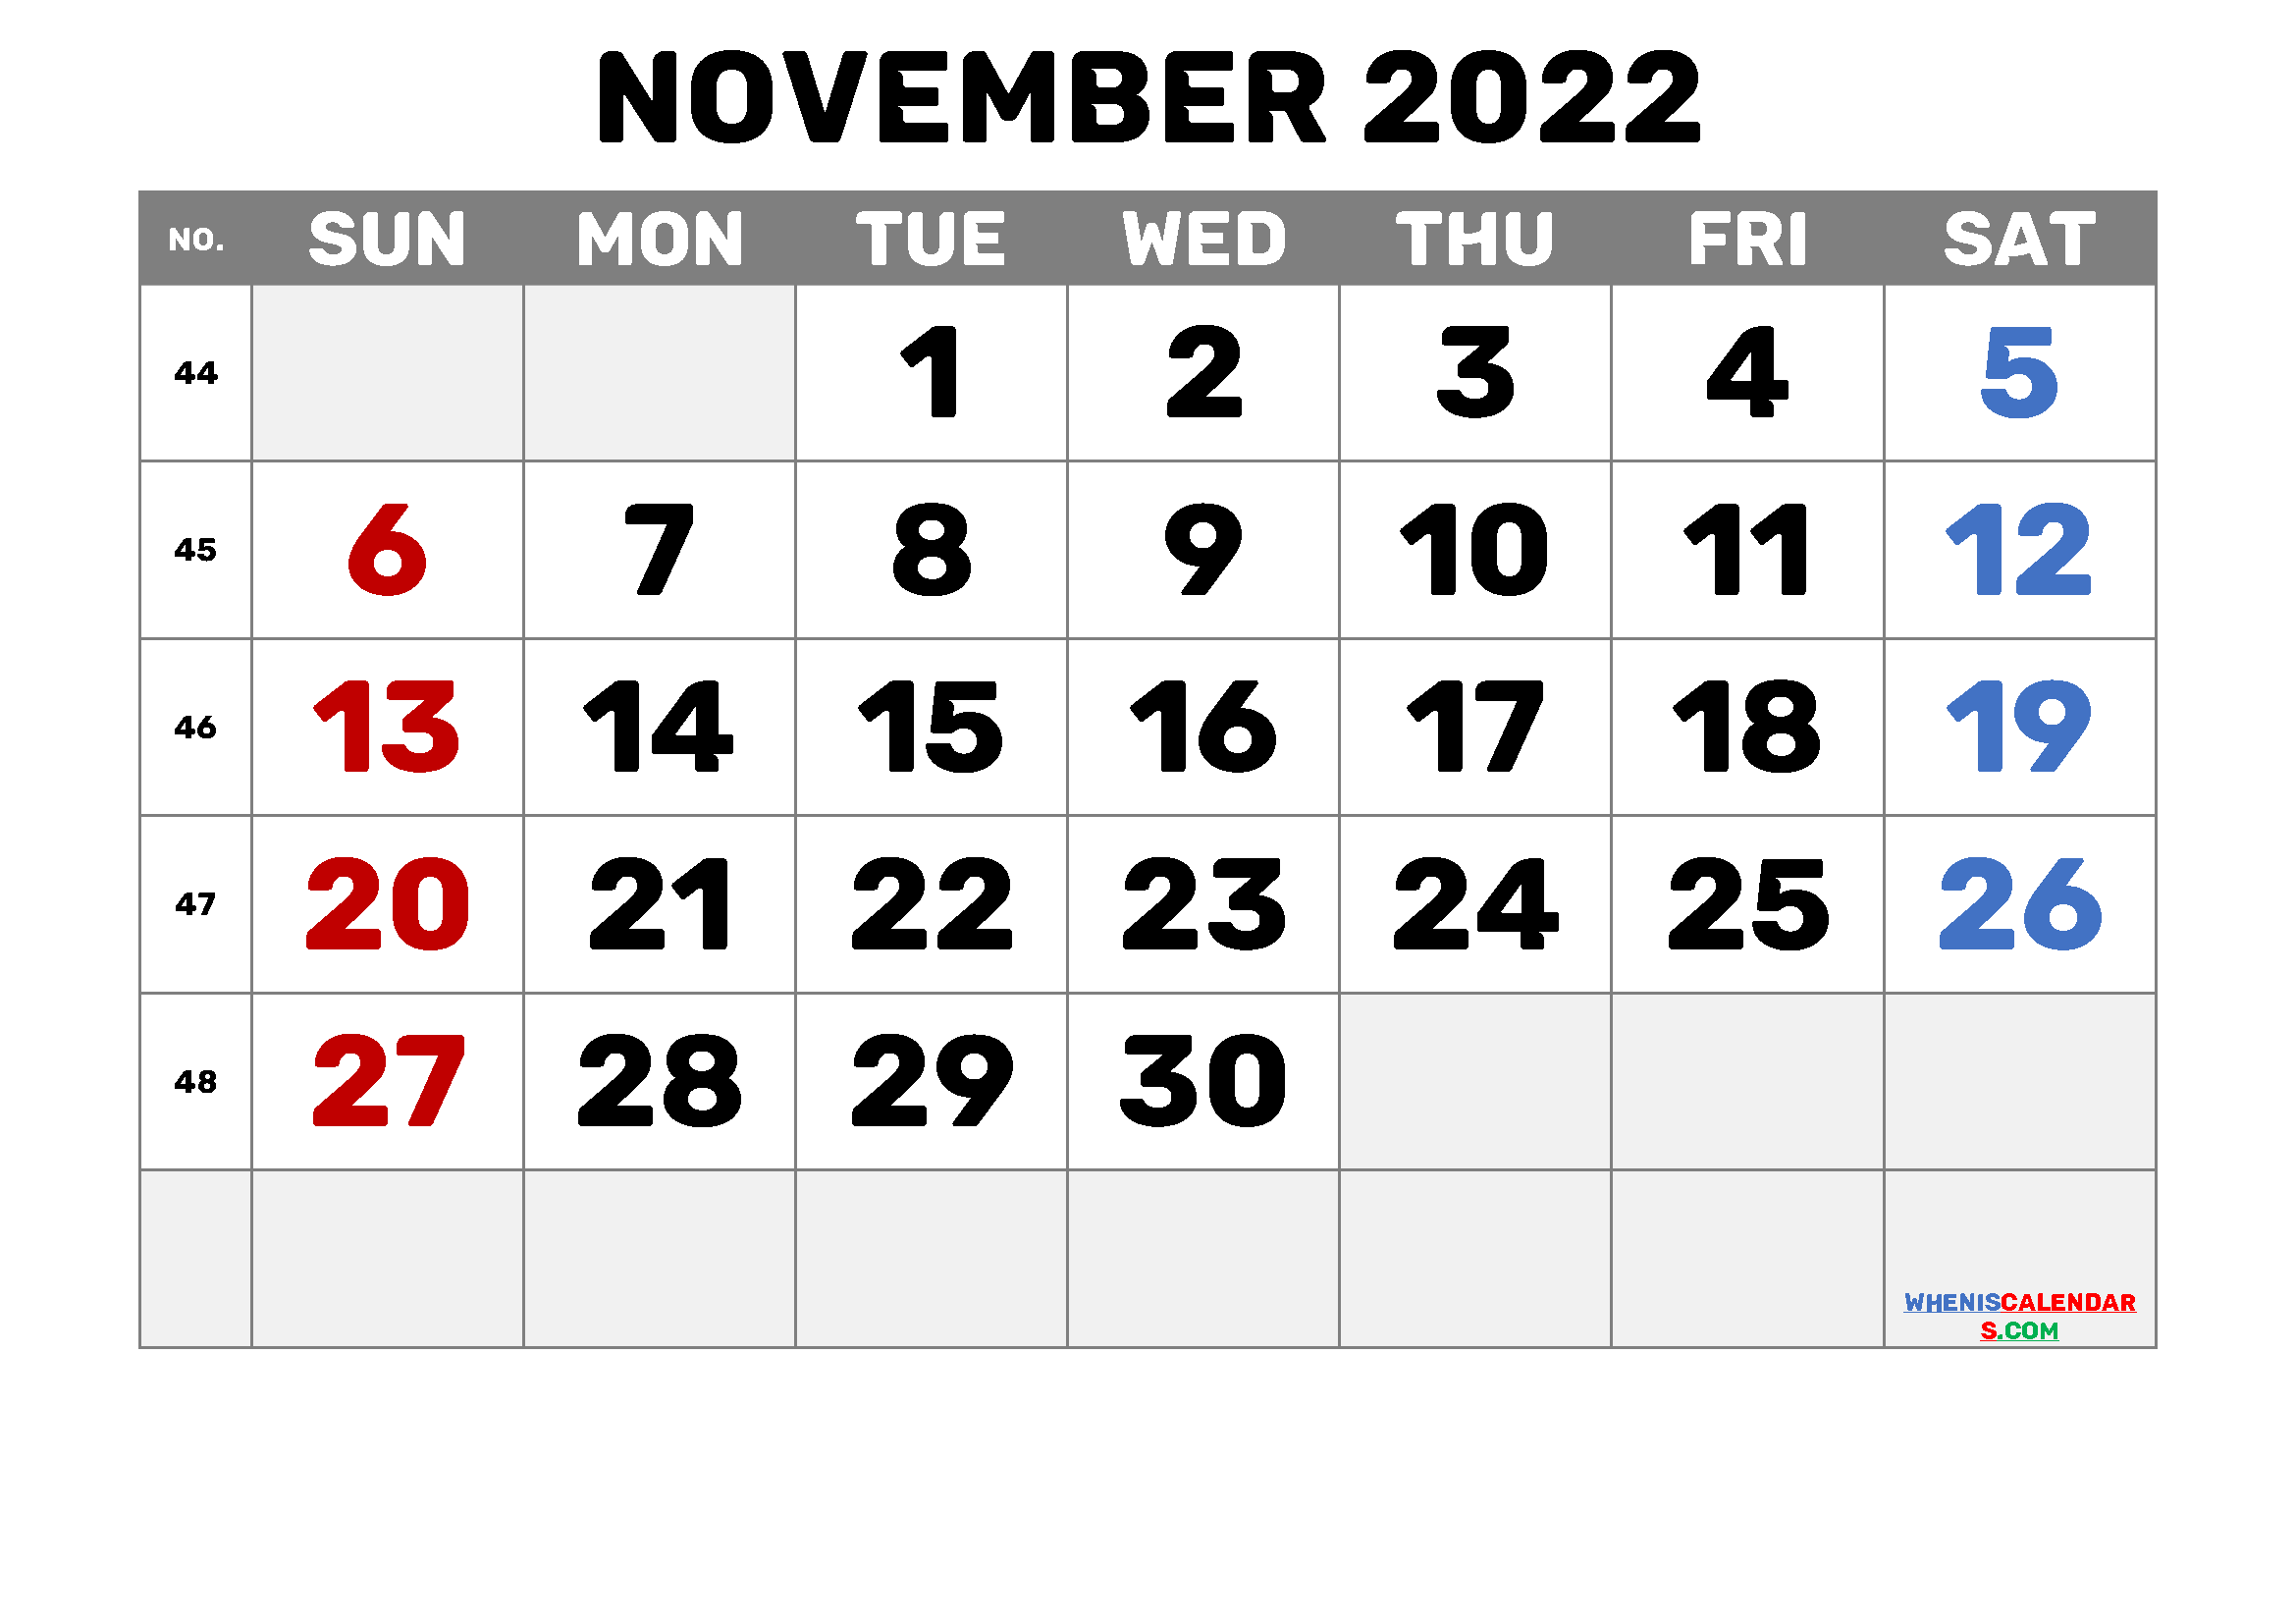 November 2022 Calendar Template Free Printable Calendar November 2022 With Week Numbers